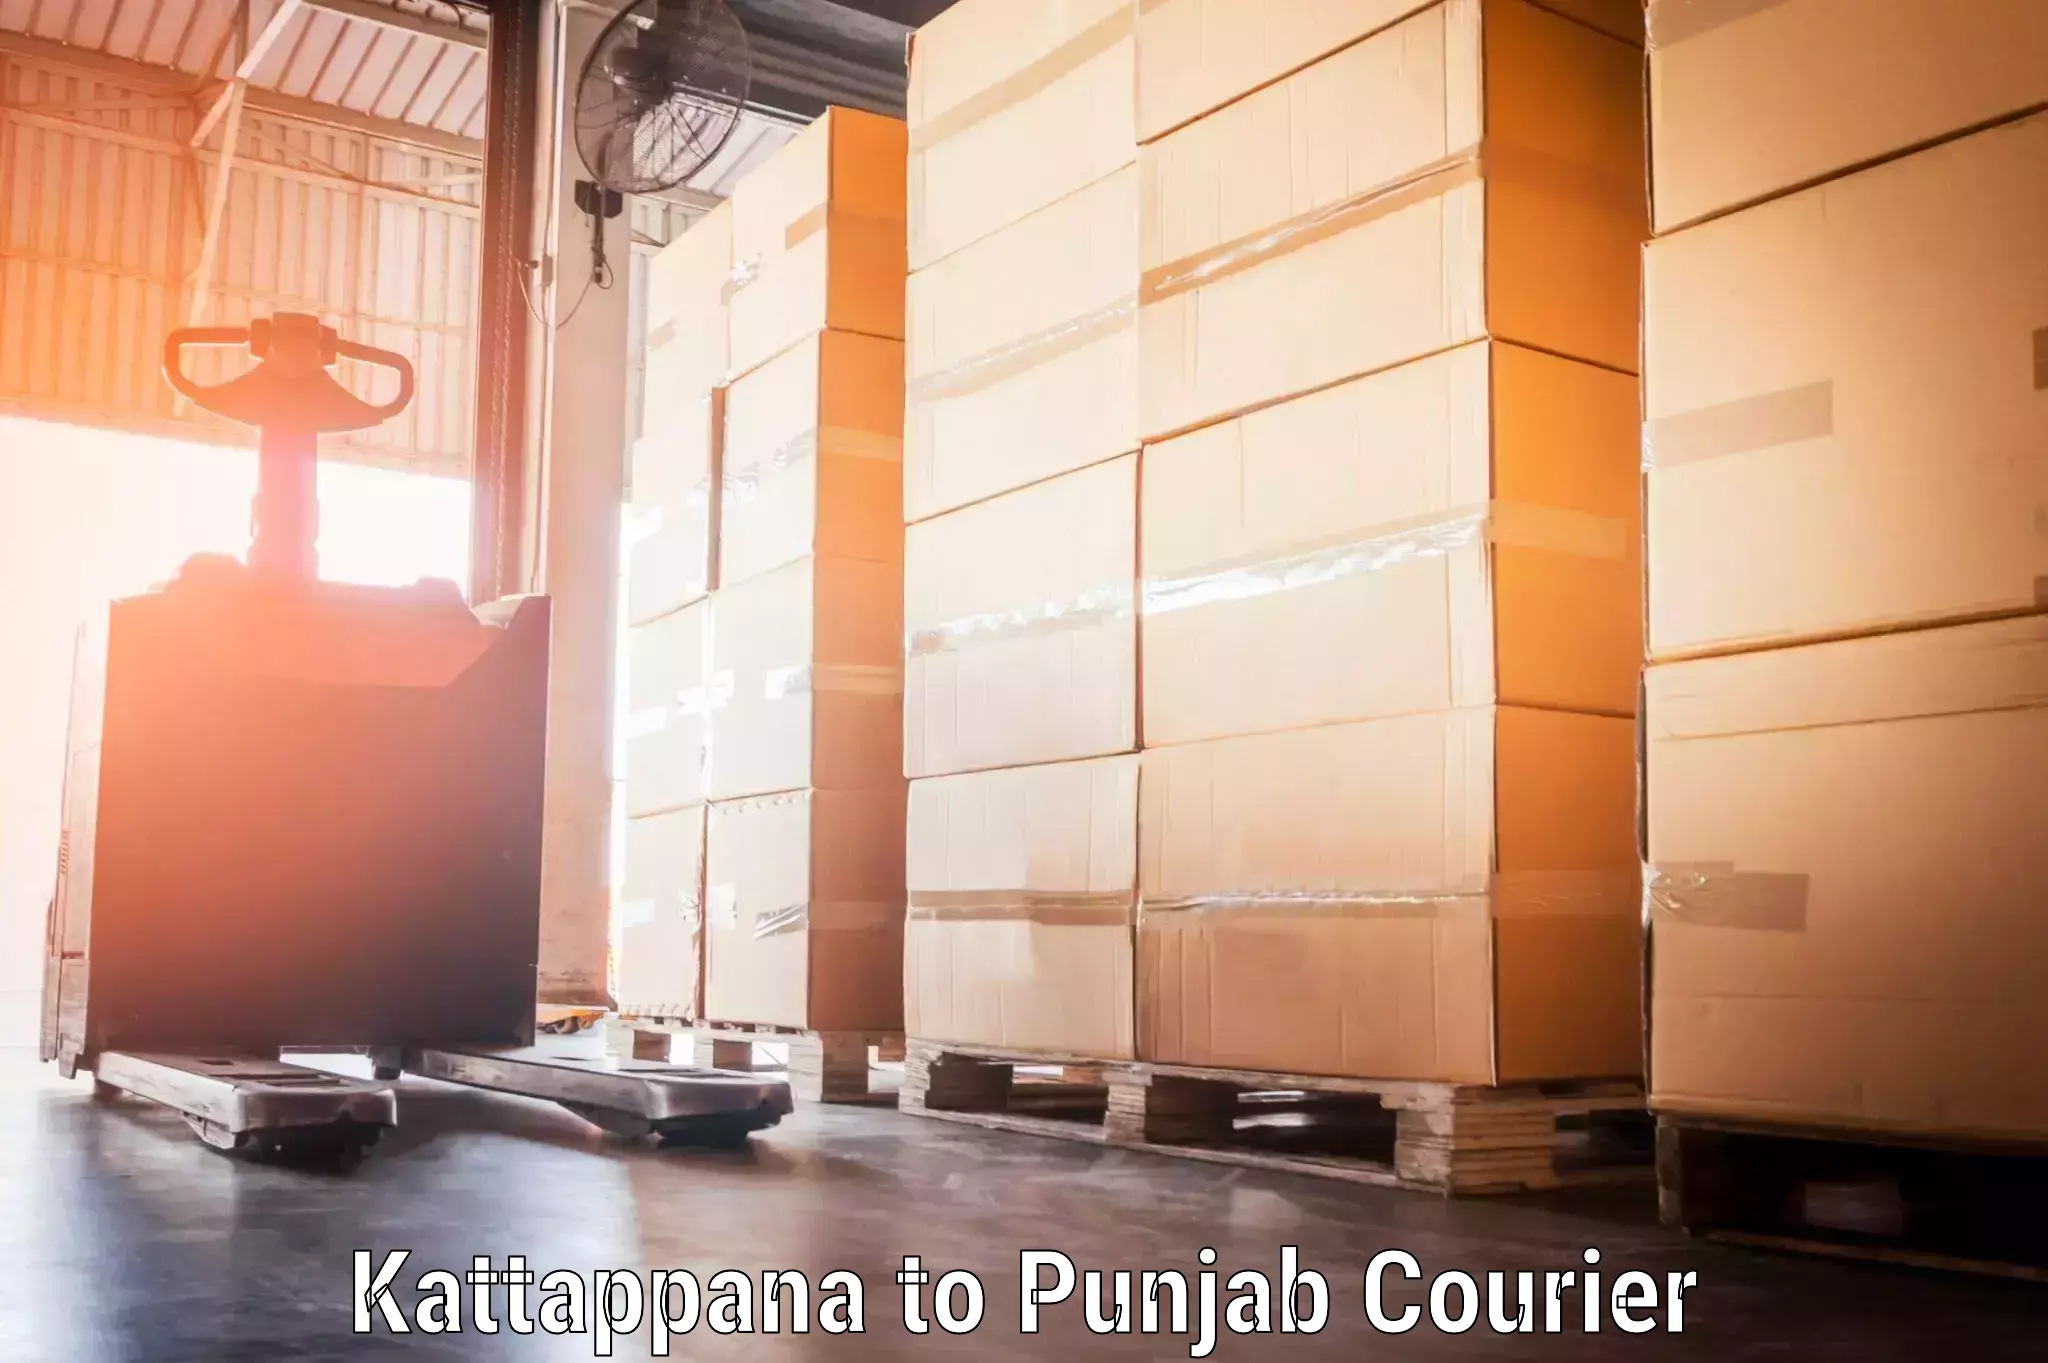 Baggage shipping experts Kattappana to Punjab